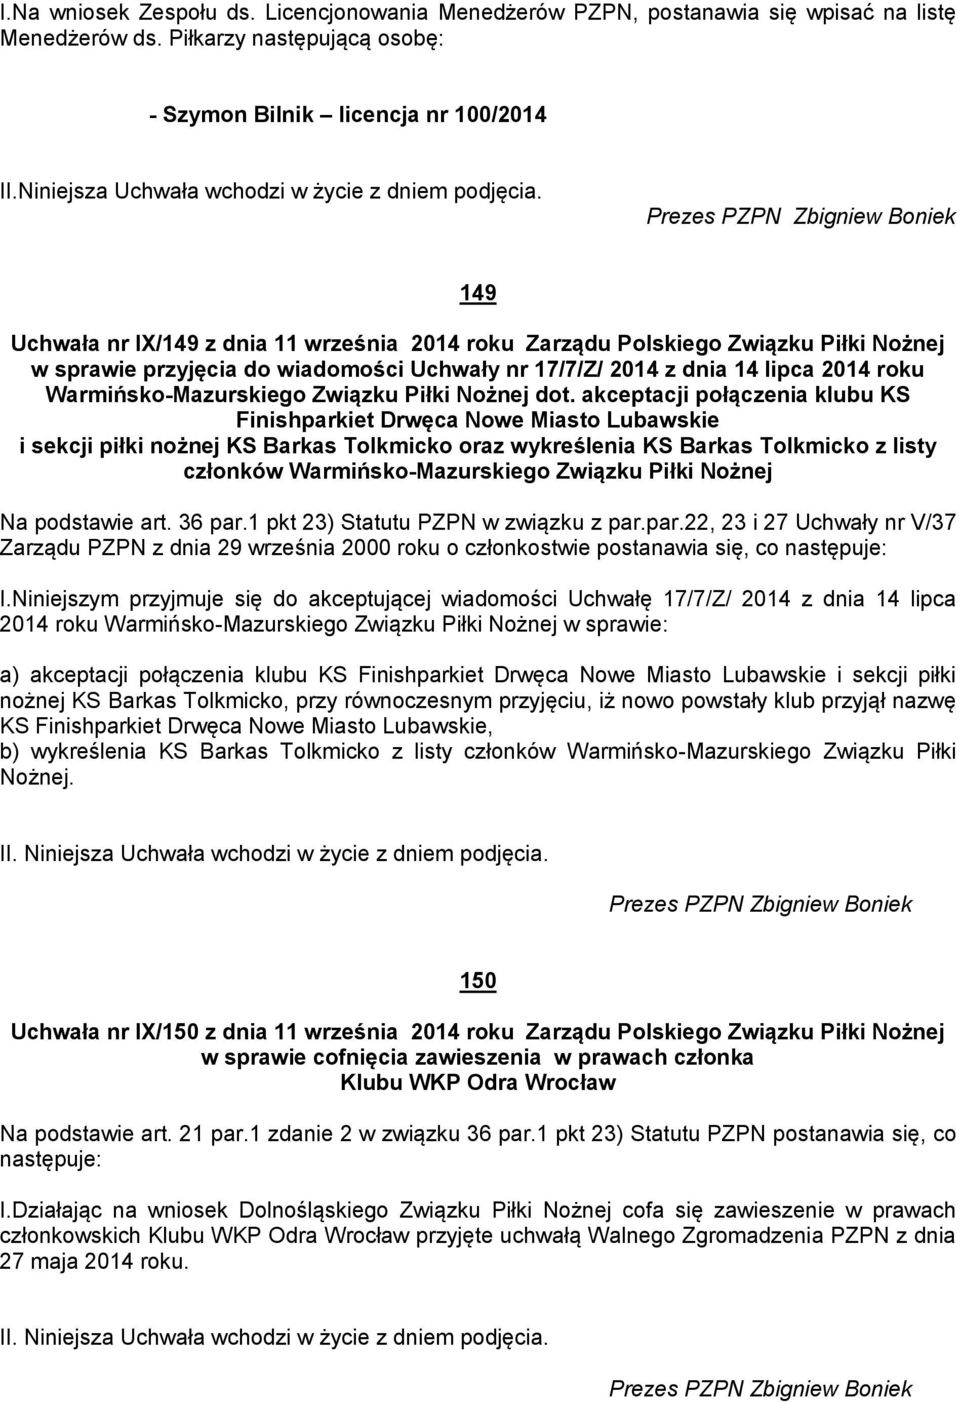 Prezes PZPN Zbigniew Boniek 149 Uchwała nr IX/149 z dnia 11 września 2014 roku Zarządu Polskiego Związku Piłki Nożnej w sprawie przyjęcia do wiadomości Uchwały nr 17/7/Z/ 2014 z dnia 14 lipca 2014